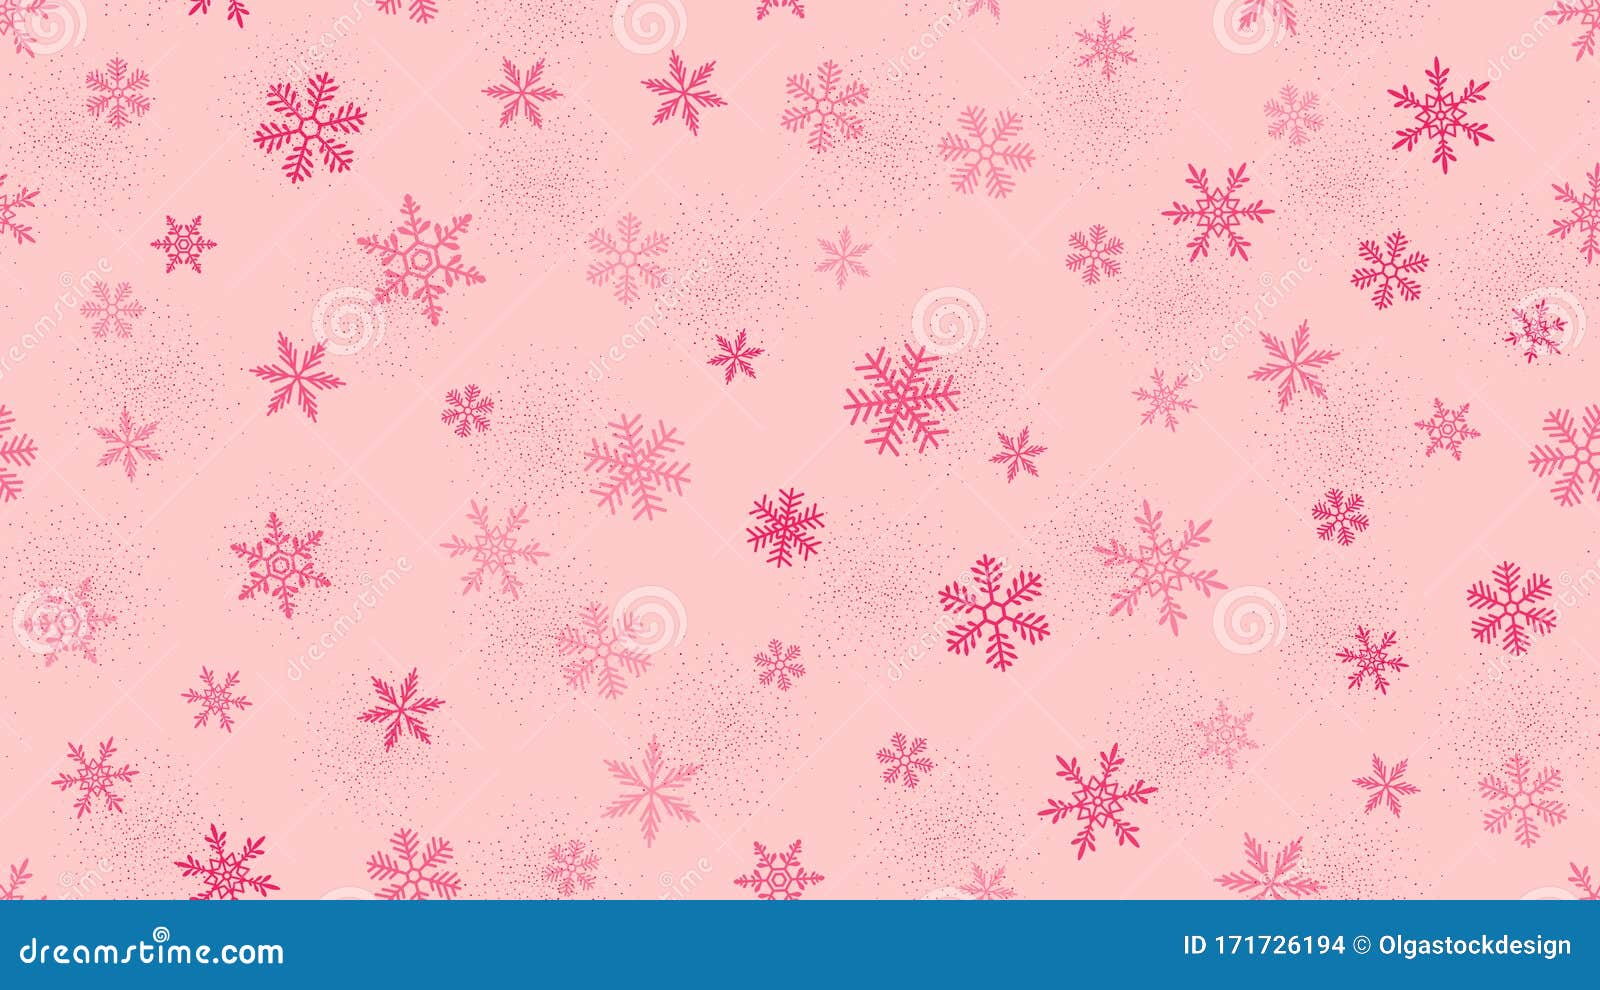 Vector tuyết hồng tuyệt đẹp và đầy sáng tạo sẽ khiến bạn mê mẩn ngay từ cái nhìn đầu tiên. Hãy sử dụng nền tảng tuyết hồng này để thêm chút màu sắc Giáng Sinh cho những thiết kế của bạn.